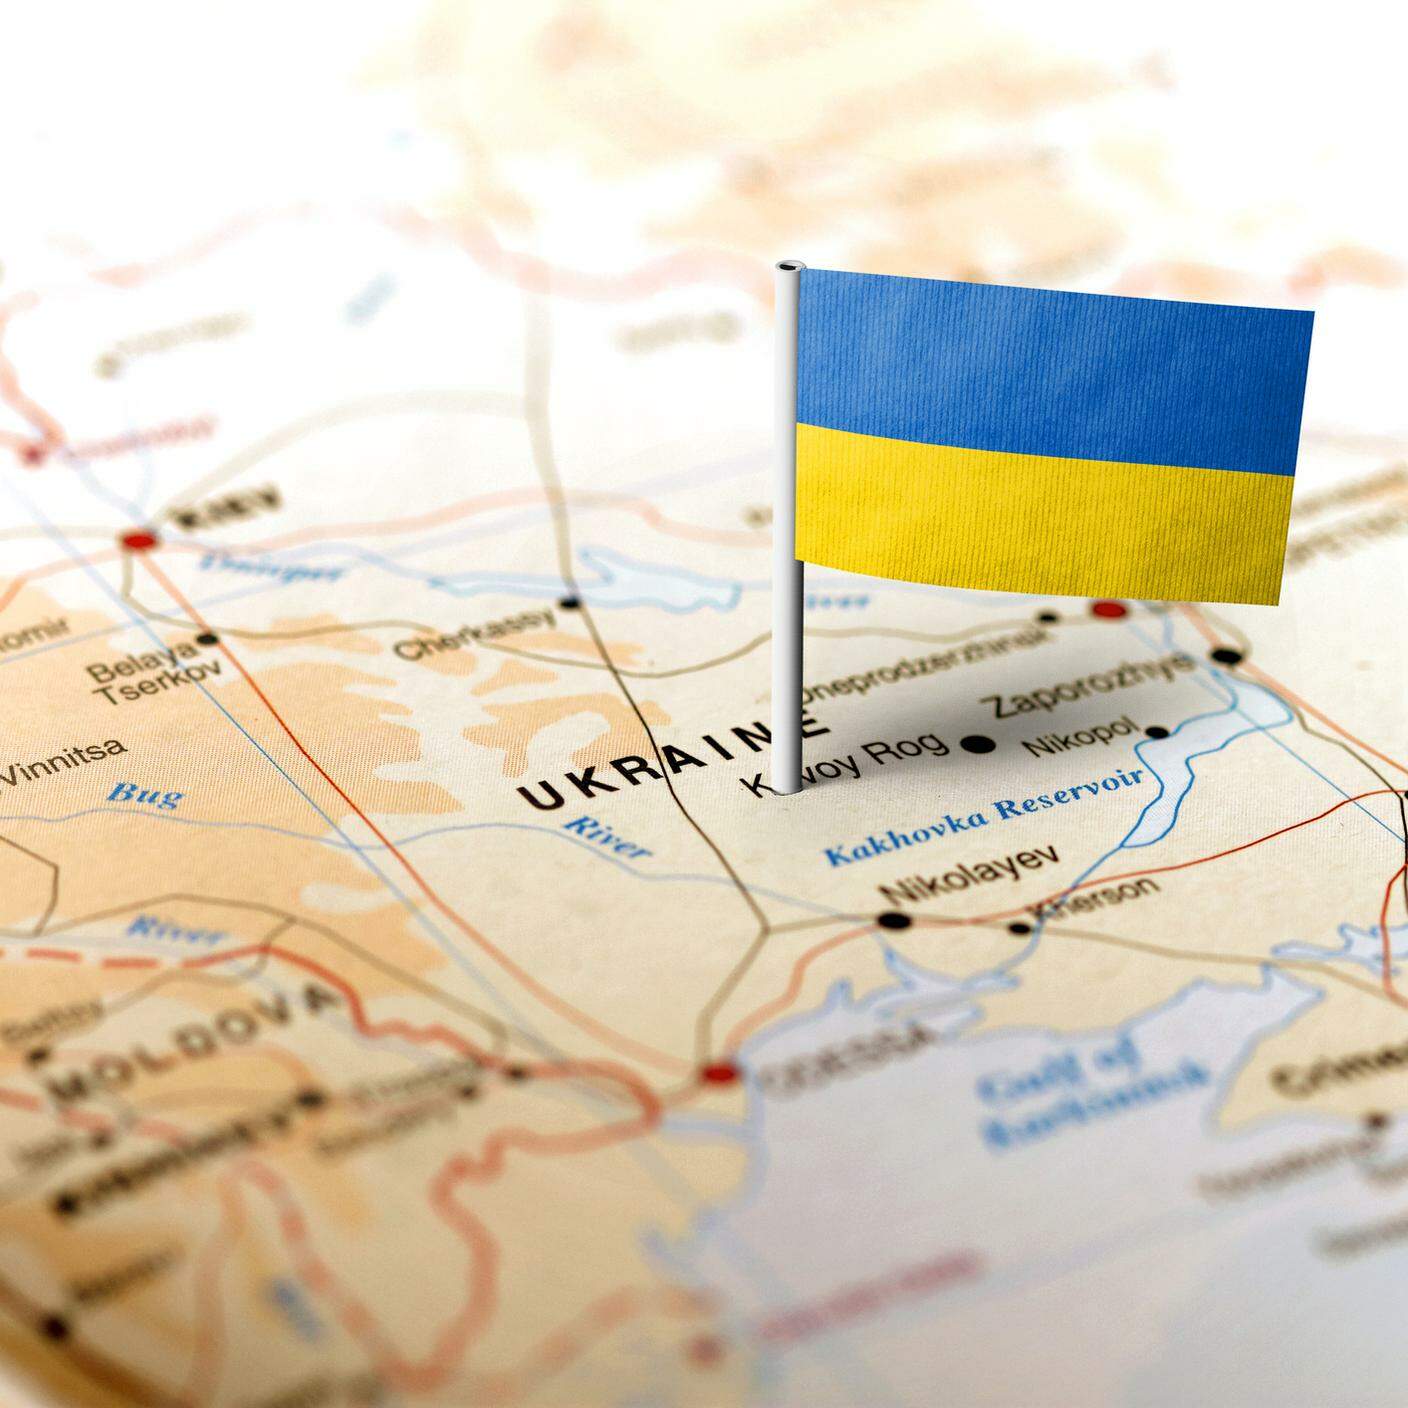 Cartina Ucraina